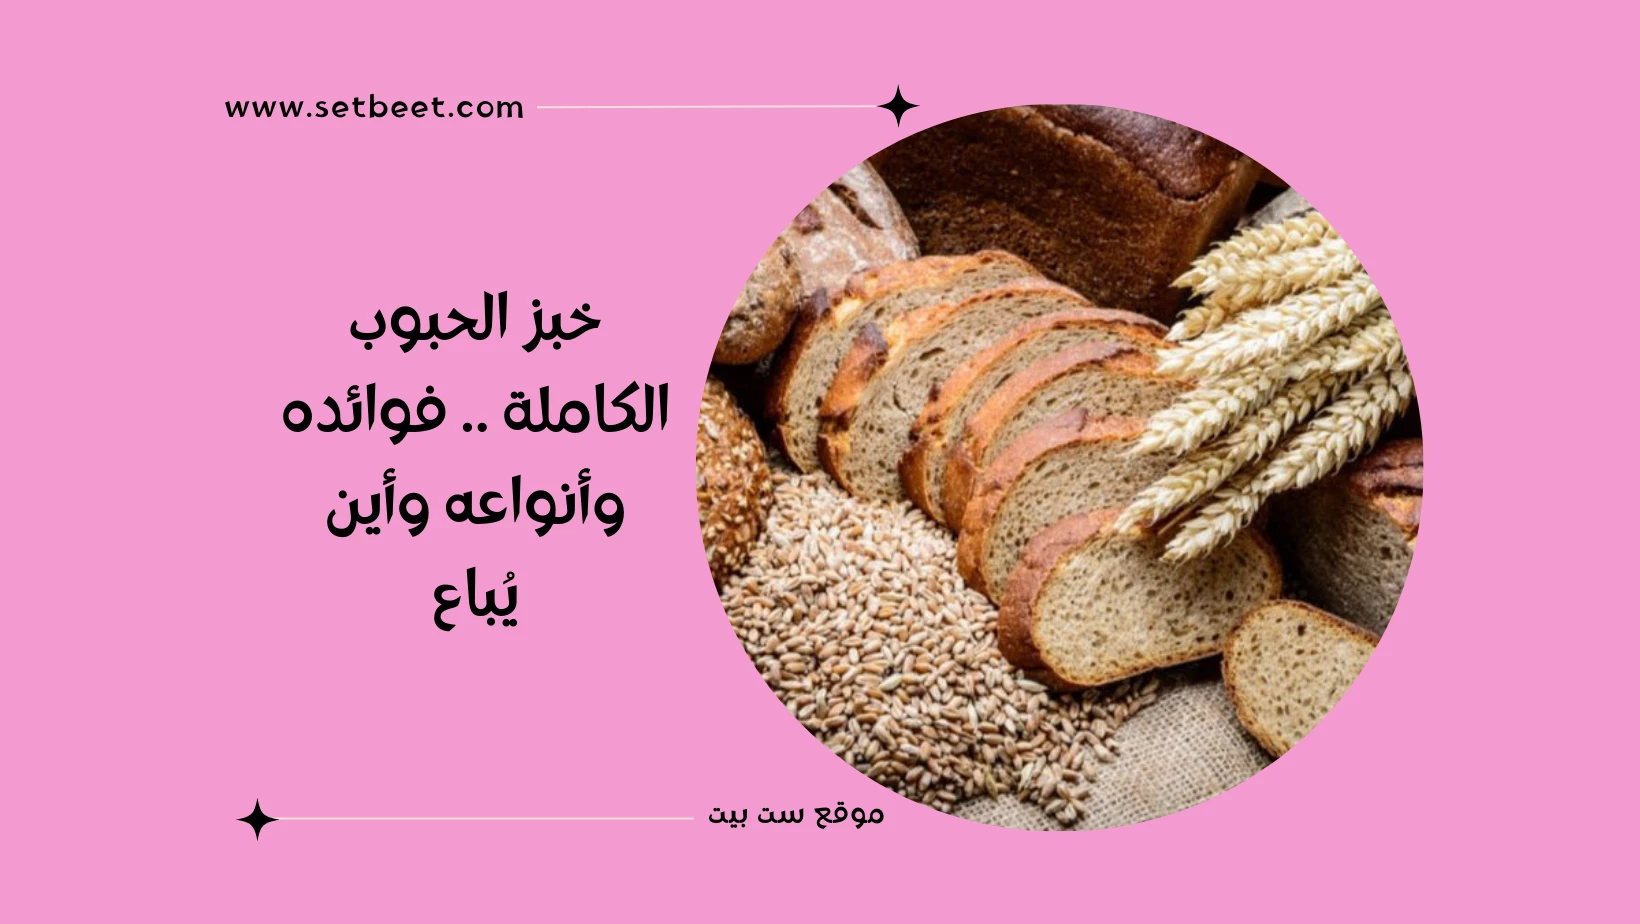 خبز الحبوب الكاملة .. فوائده وأنواعه وأين يُباع